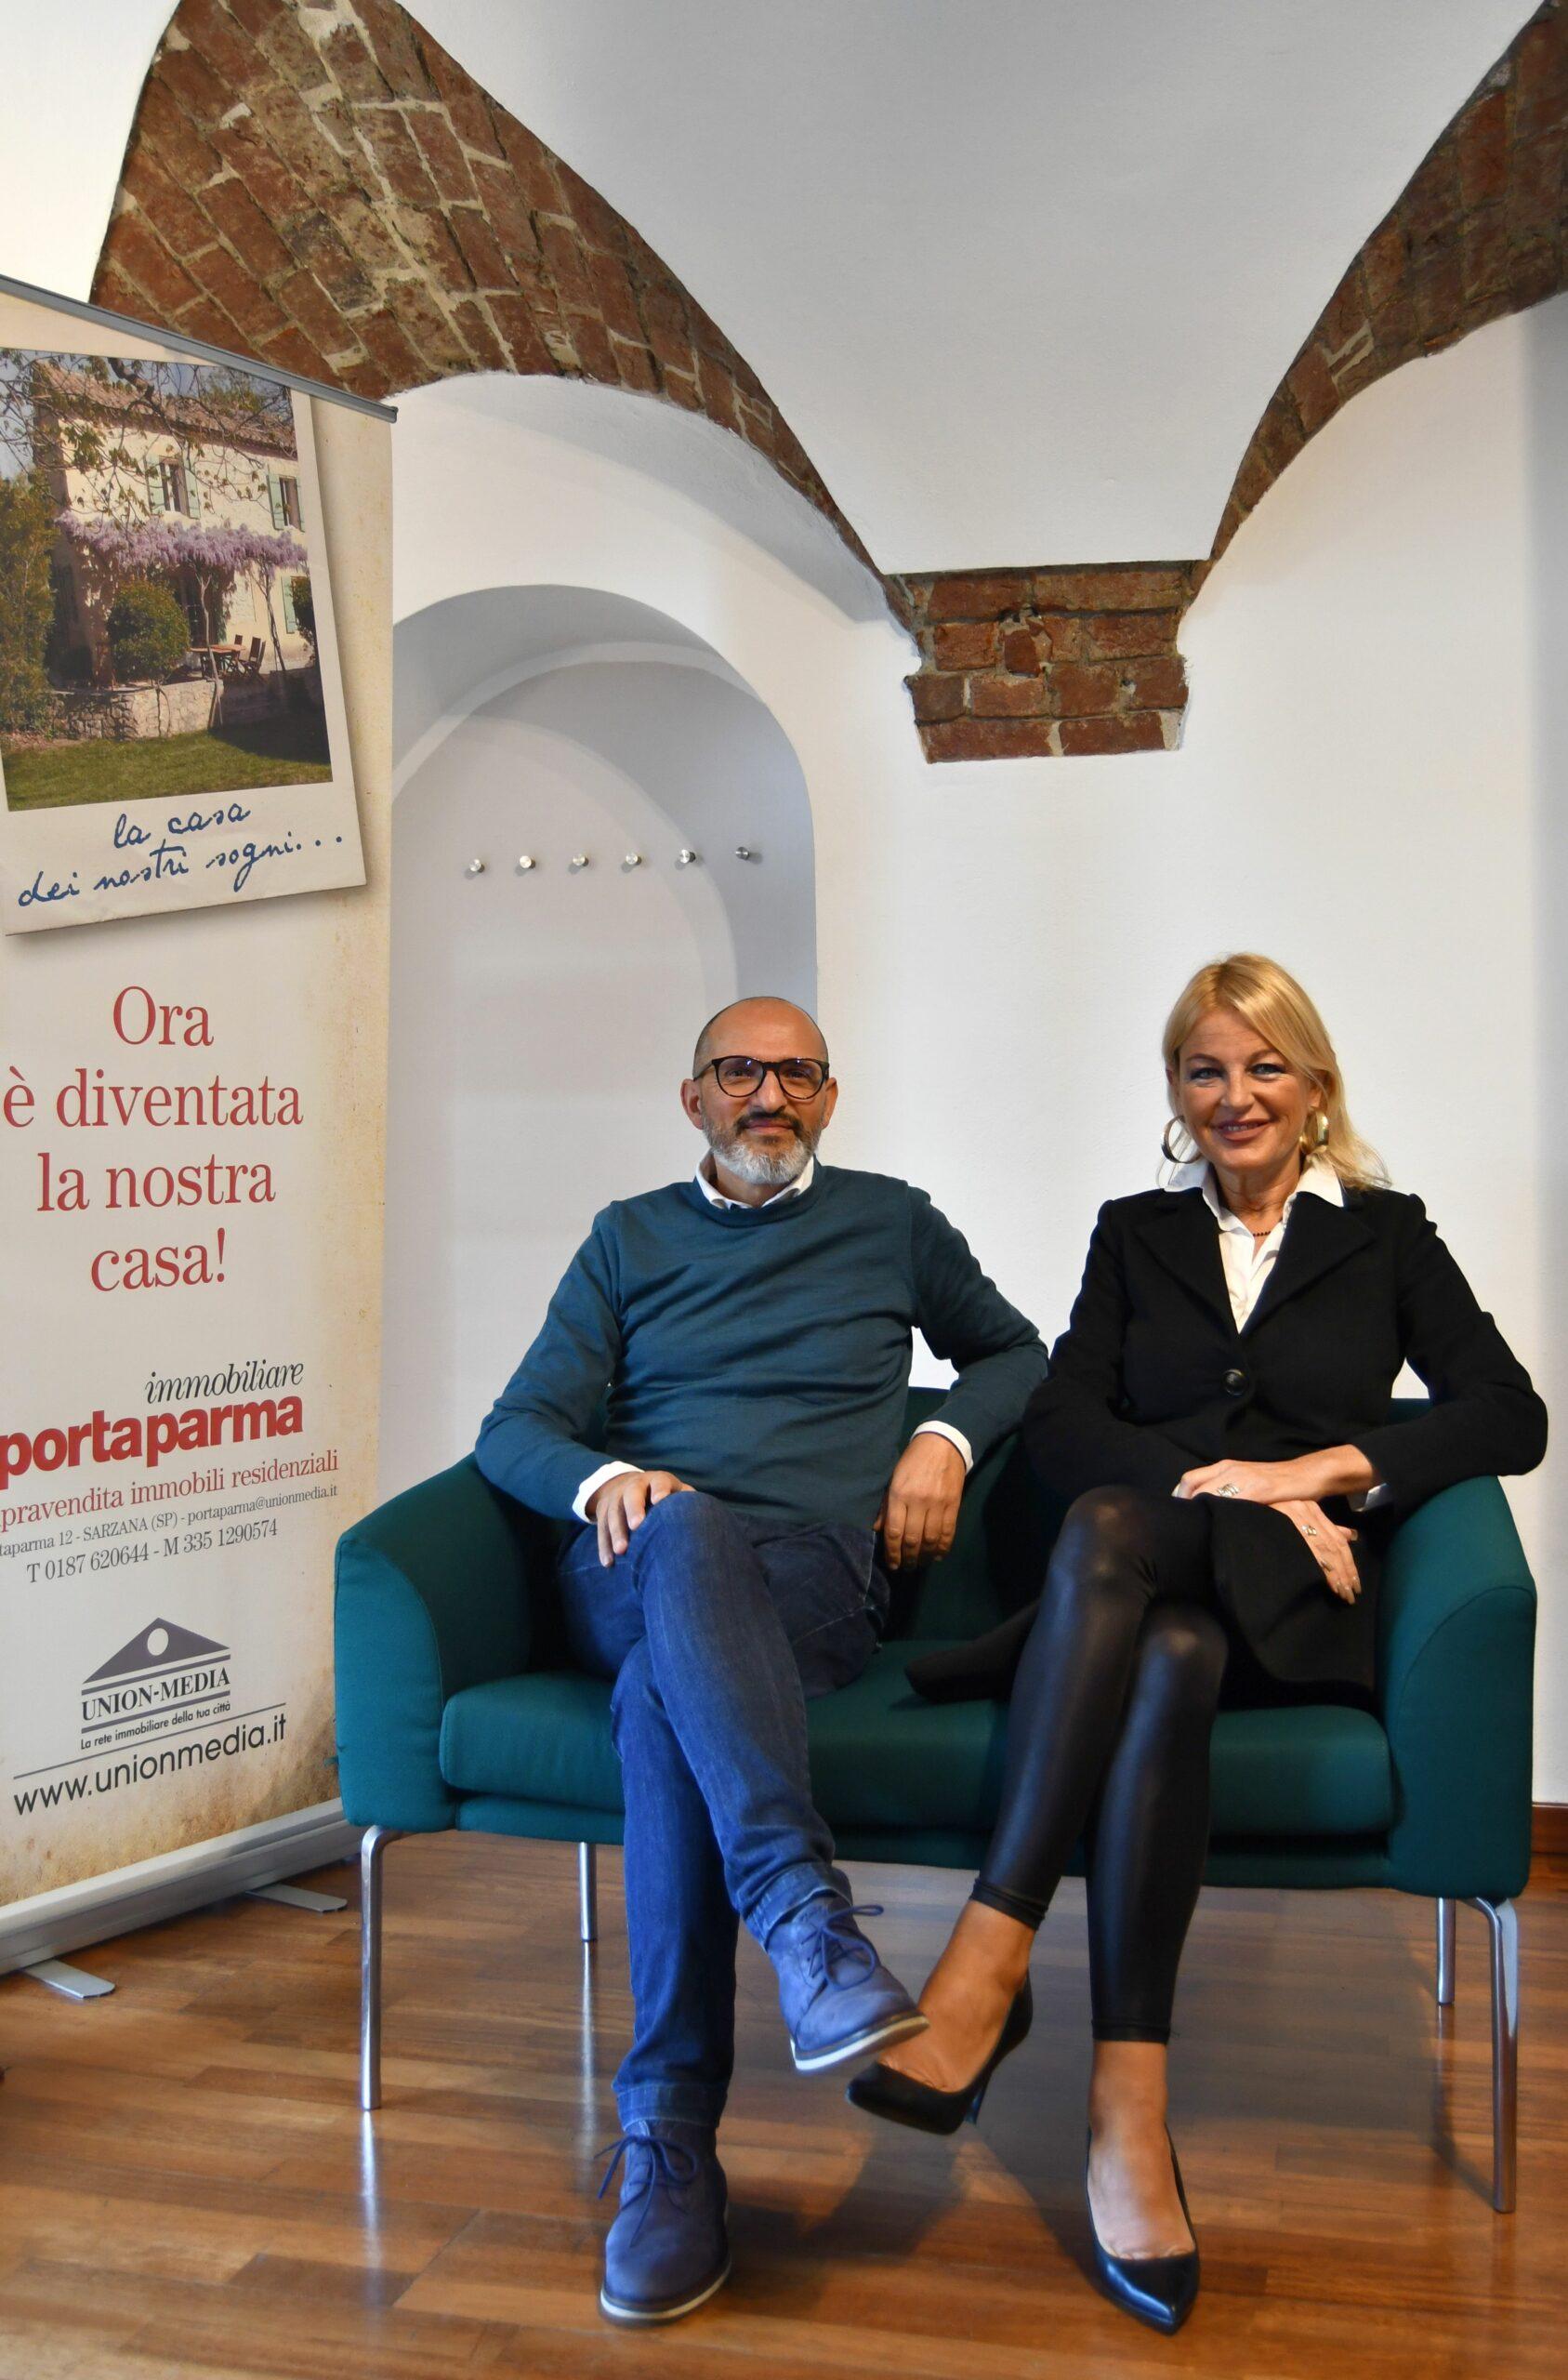 The team of Porta Parma Immobiliare